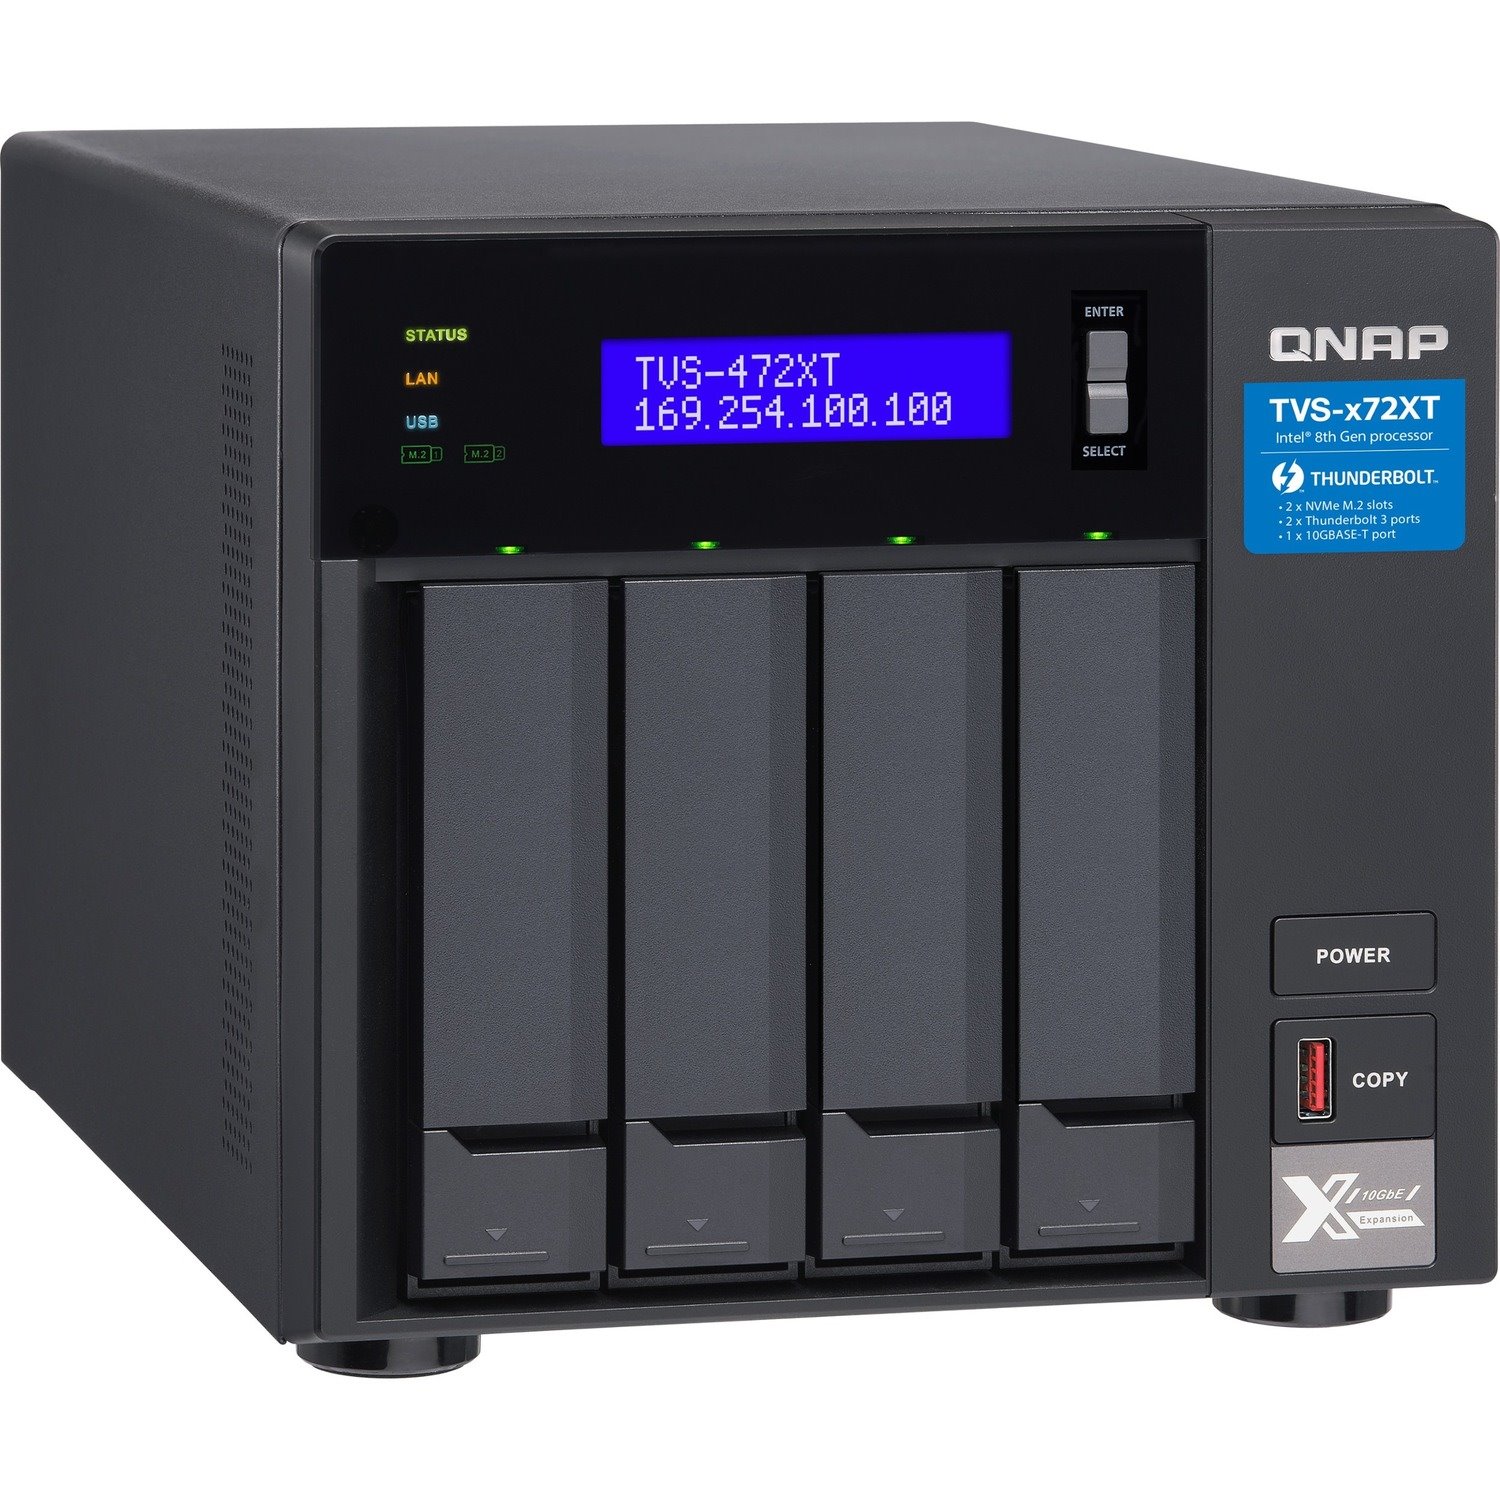 QNAP TVS-472XT-I5-4G SAN/NAS/DAS Storage System